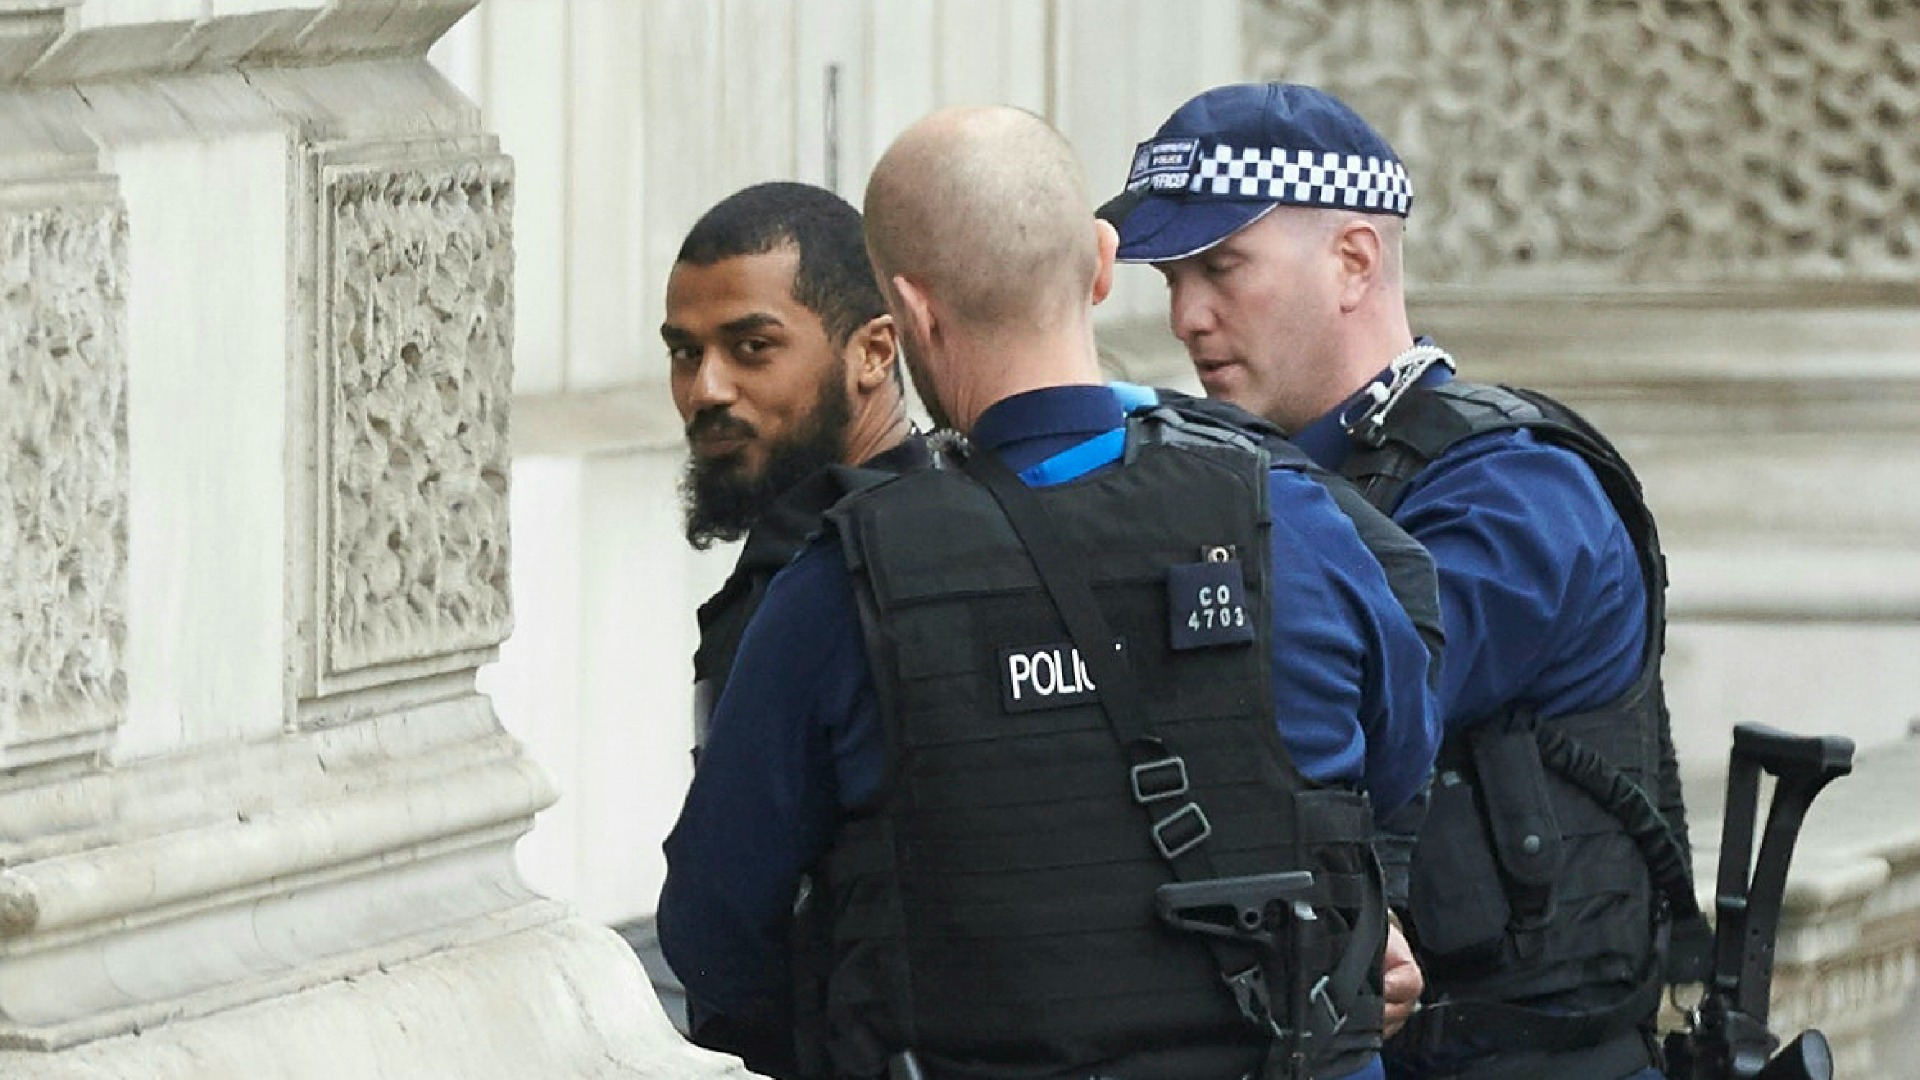 La policía detiene a un hombre armado cerca del Parlamento británico